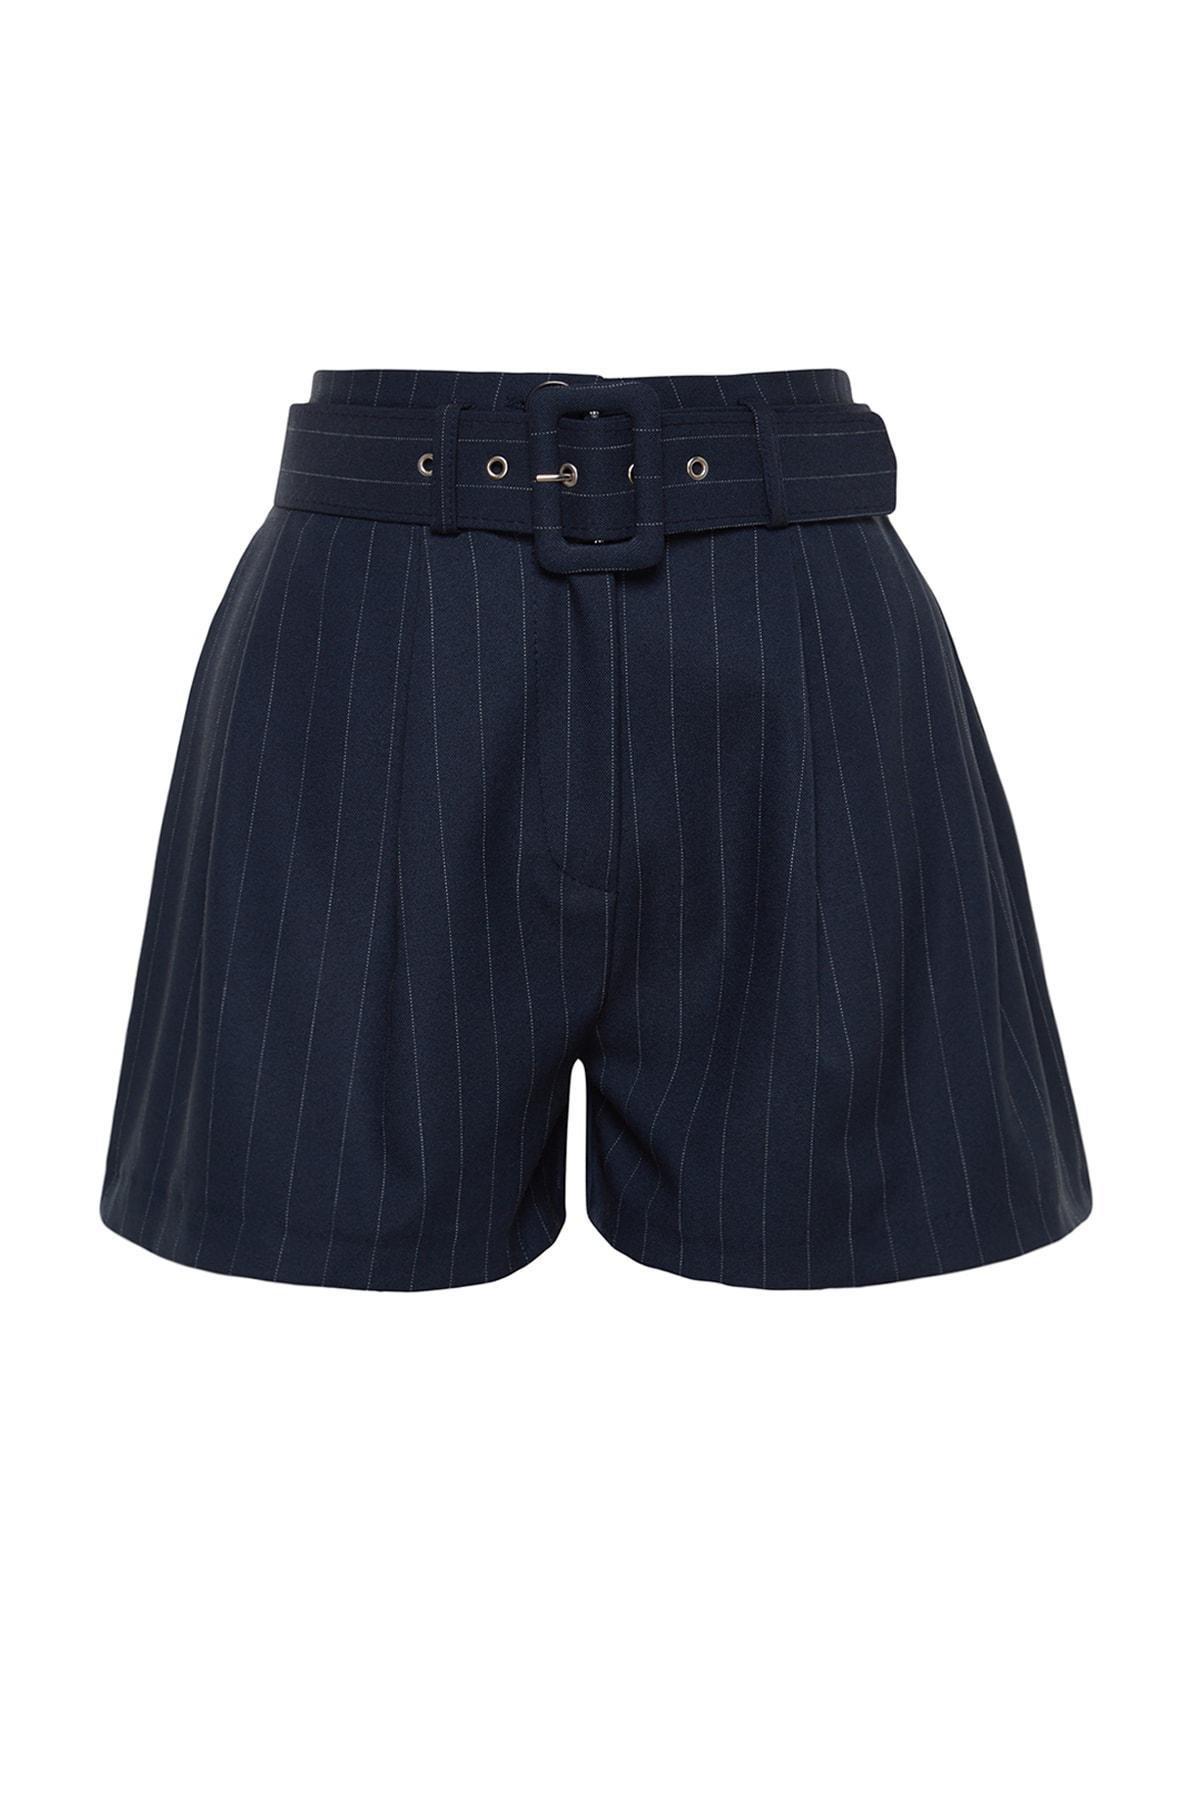 Trendyol - Navy Premium Striped Woven Shorts